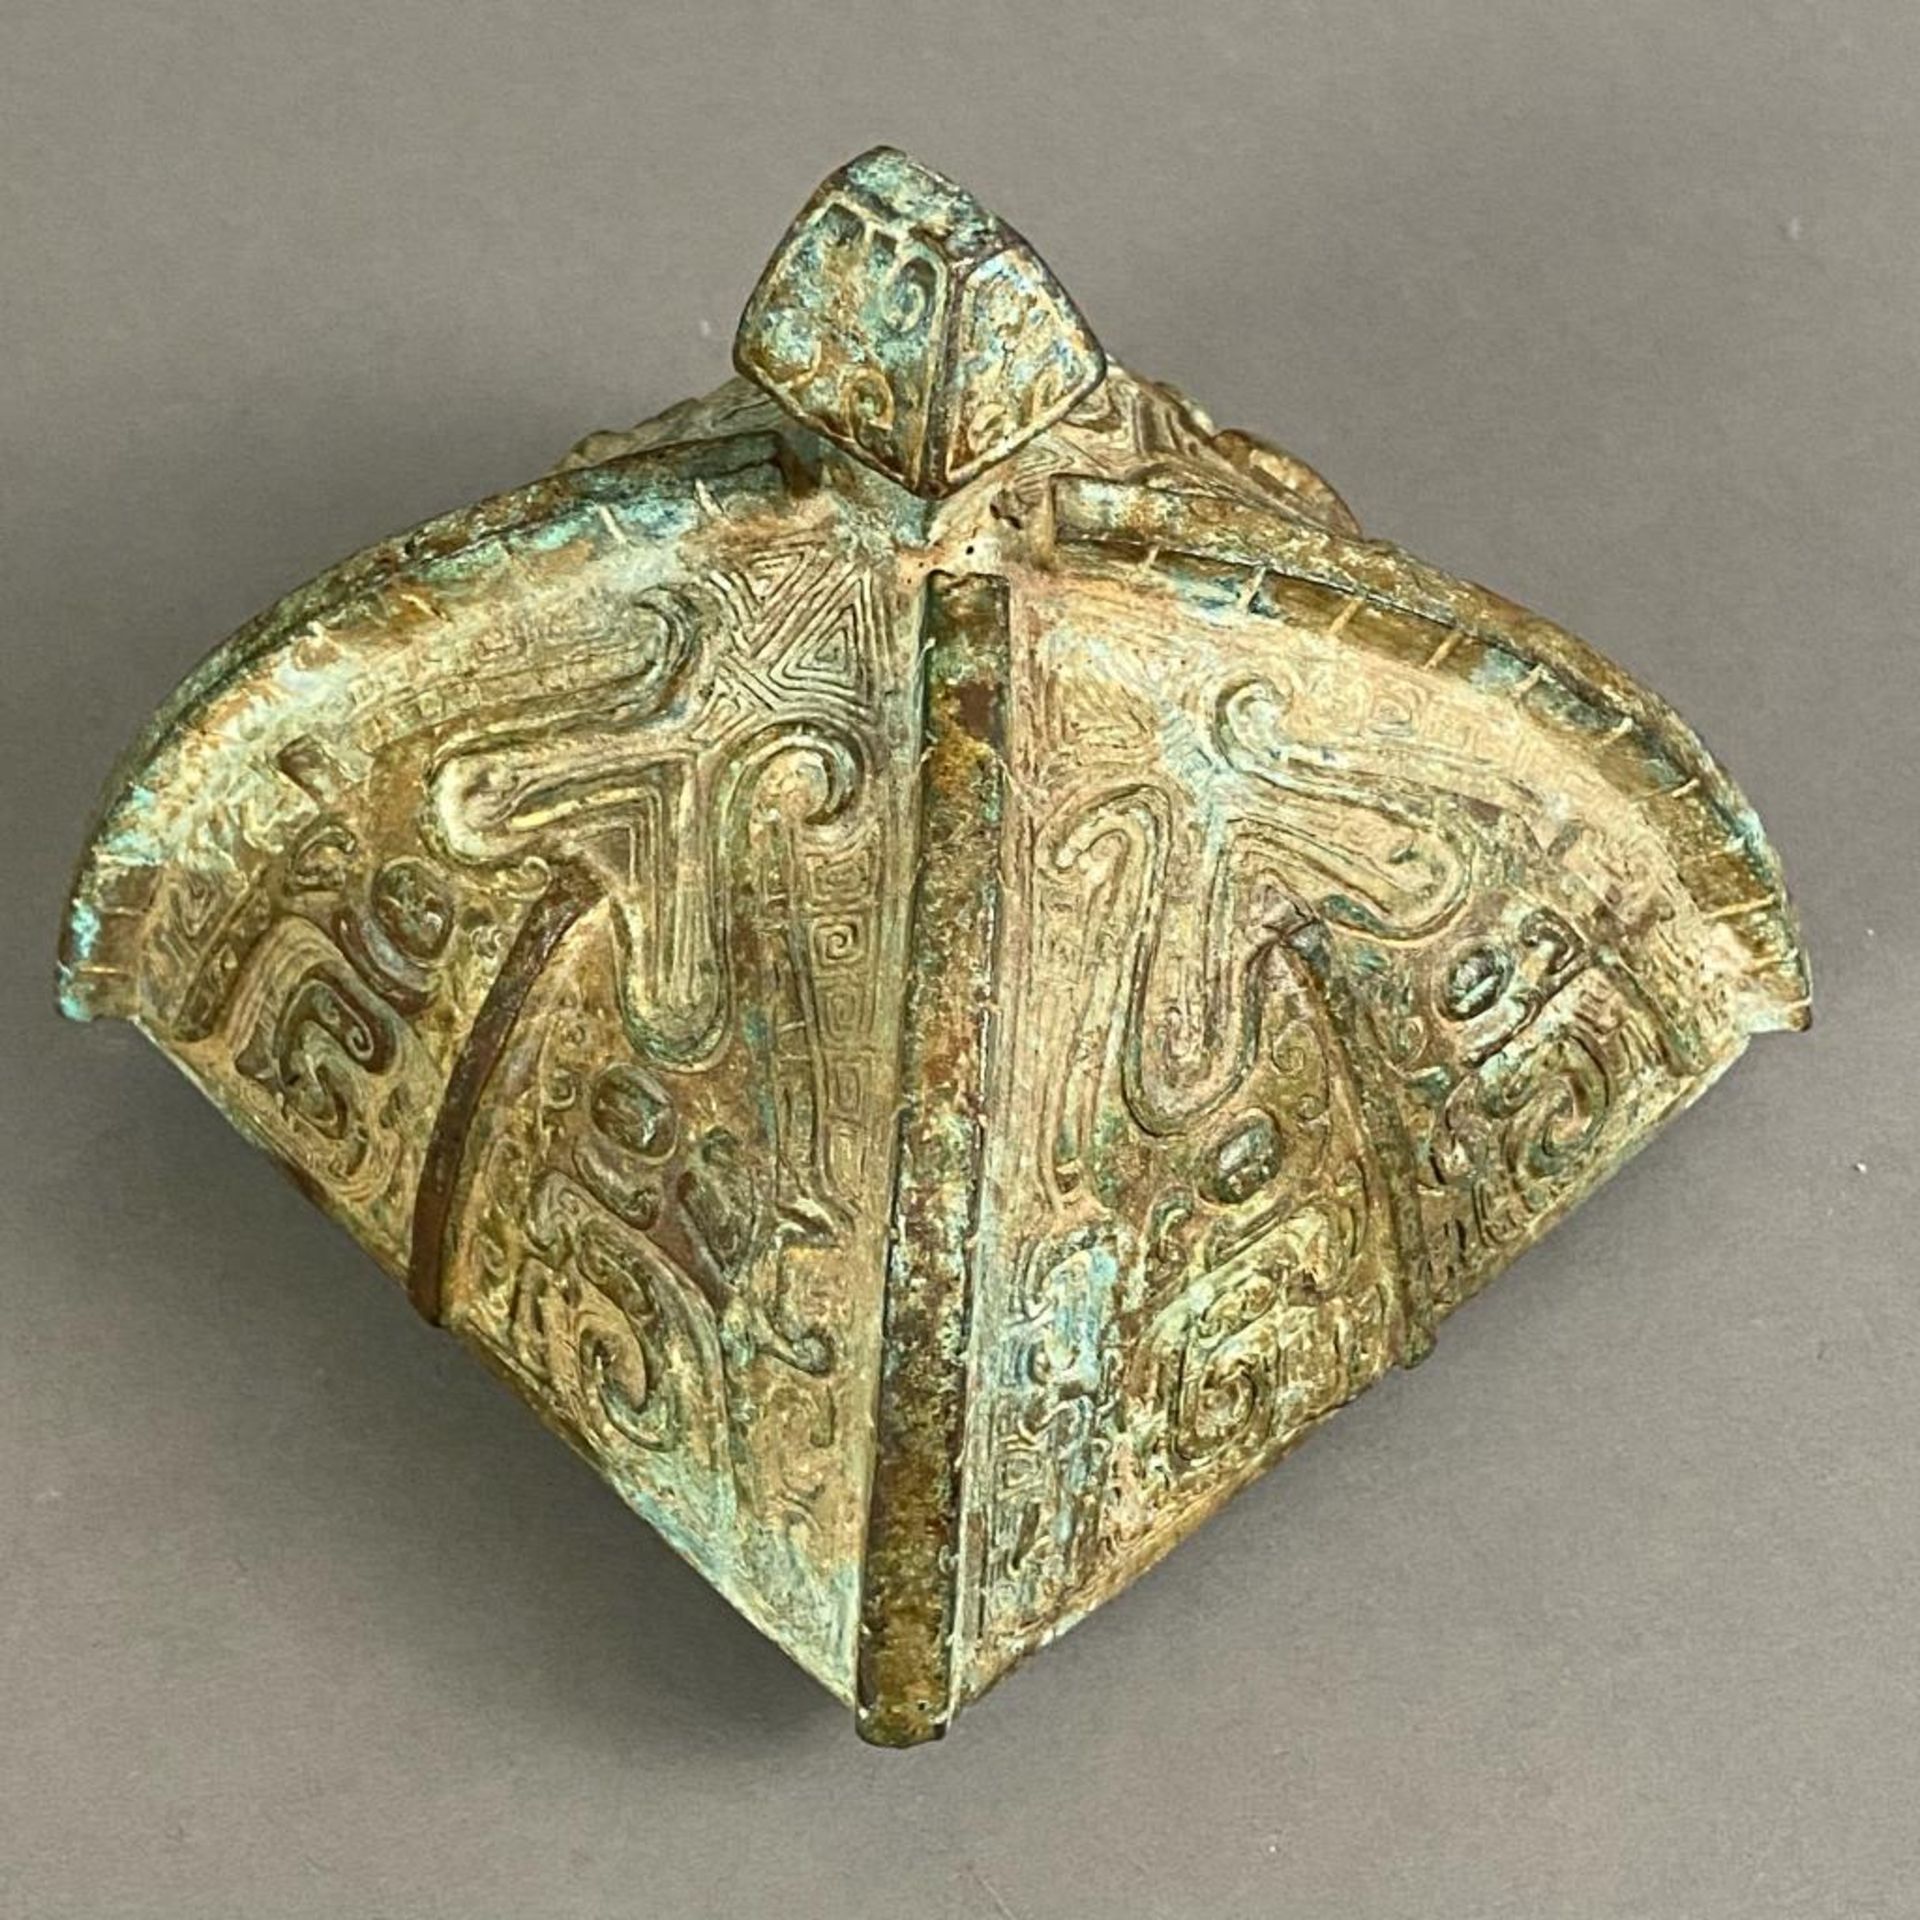 Fanghu-Vase im archaischen Stil - China, grün-braun patinierte Bronze, vierkantige gebauchte Form a - Bild 3 aus 10